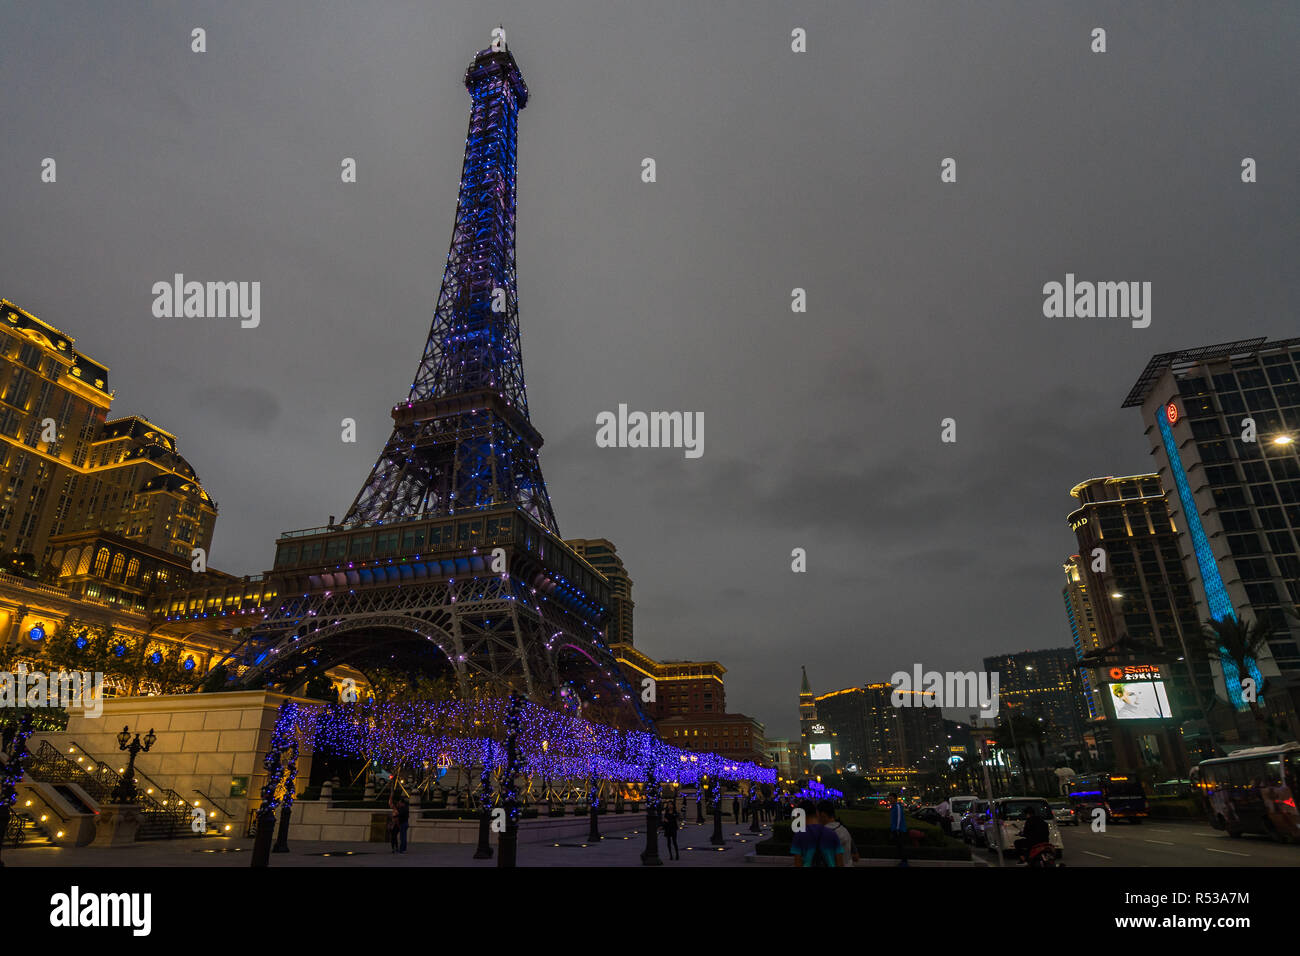 Paysage urbain de Macao Cotai strip, avec la Tour Eiffel dans le cadre de l'hôtel et casino de paris. Macao, Janvier 2018 Banque D'Images